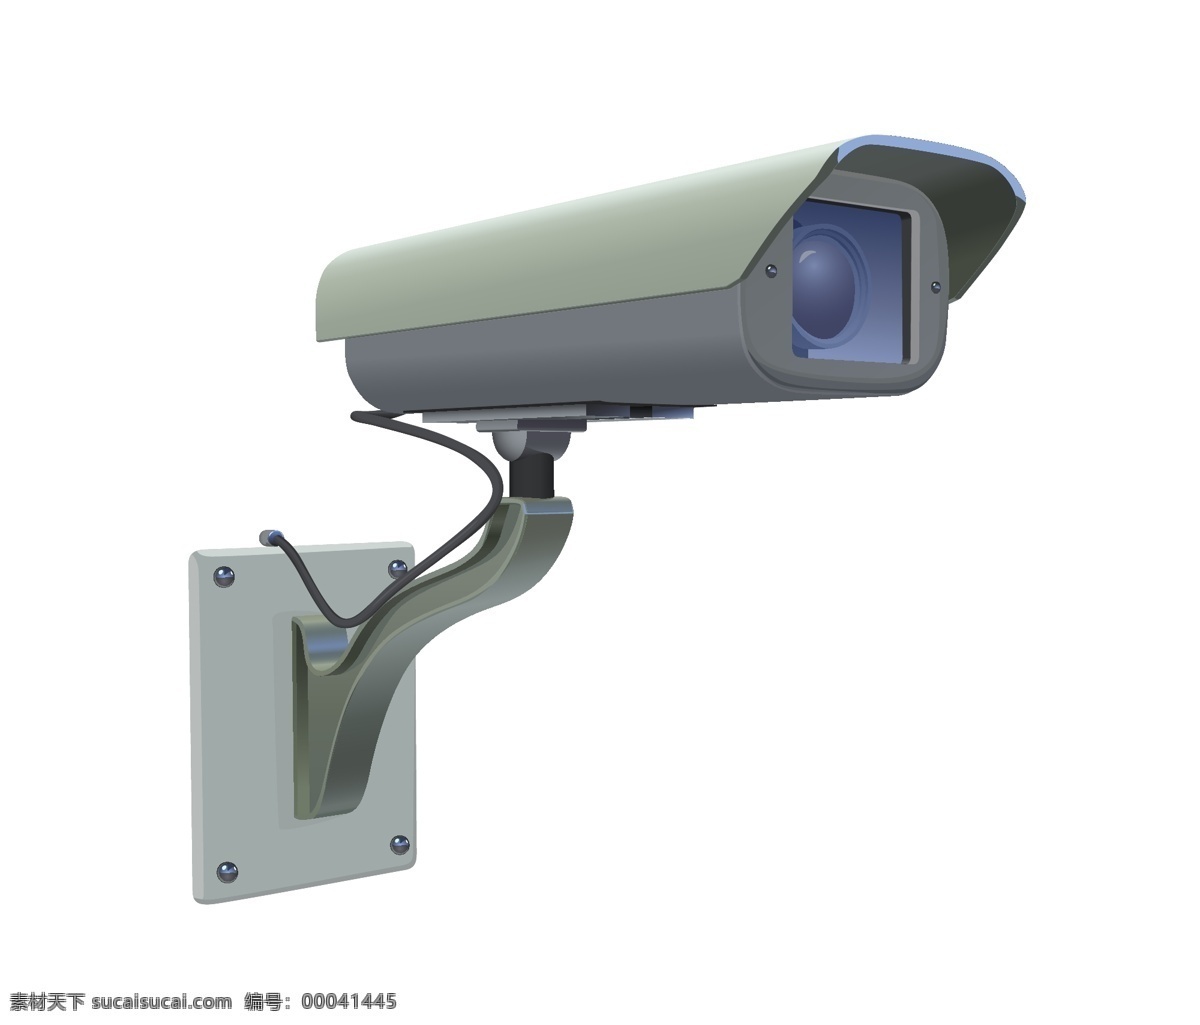 视频 监控器 办公用品 监控 摄像头 网络监视器 监视器 监视设备 防盗系统 防盗设备 矢量图 现代科技